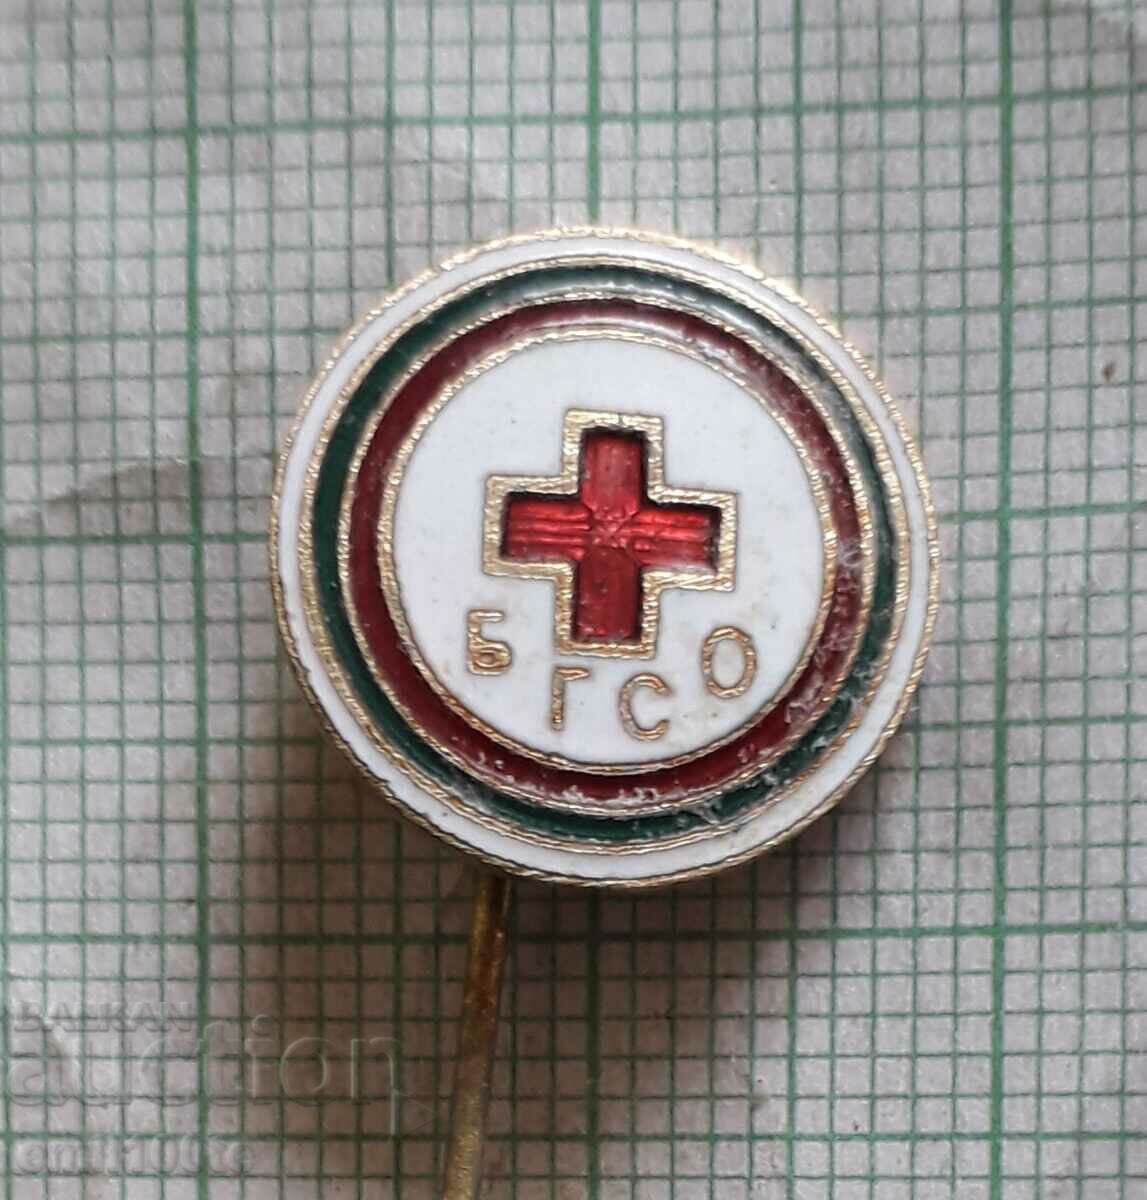 Σήμα - BGSO Ερυθρός Σταυρός